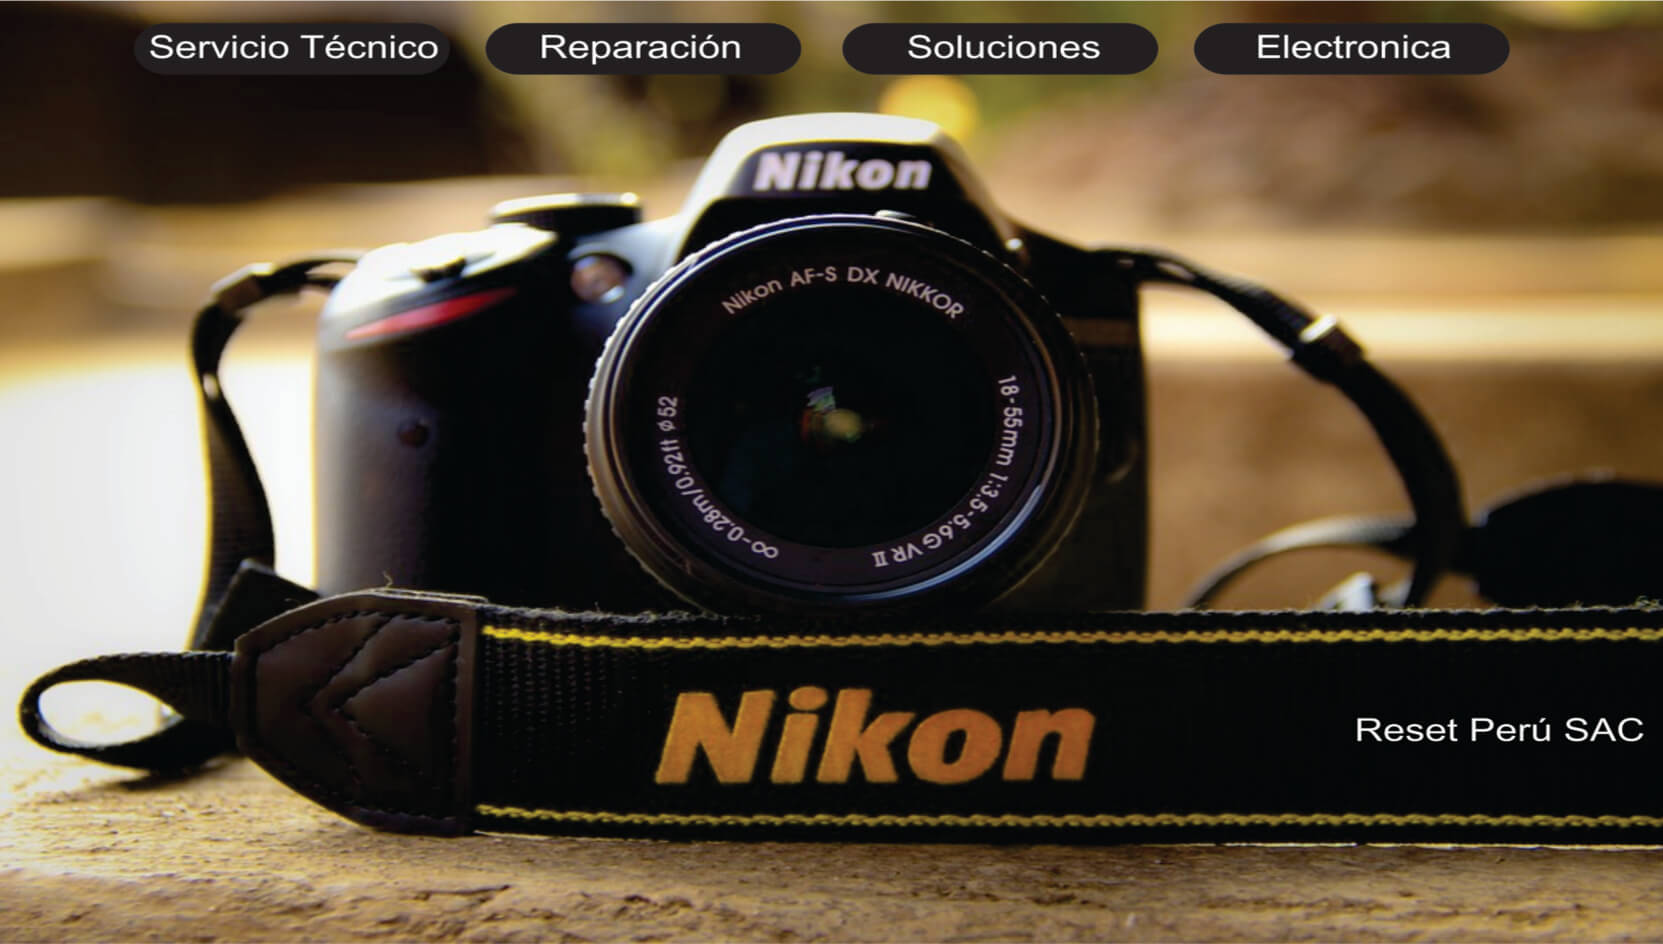 Servicio técnico, limpieza interna, cambio de pantalla, Reparación, Flex Camara Nikon.